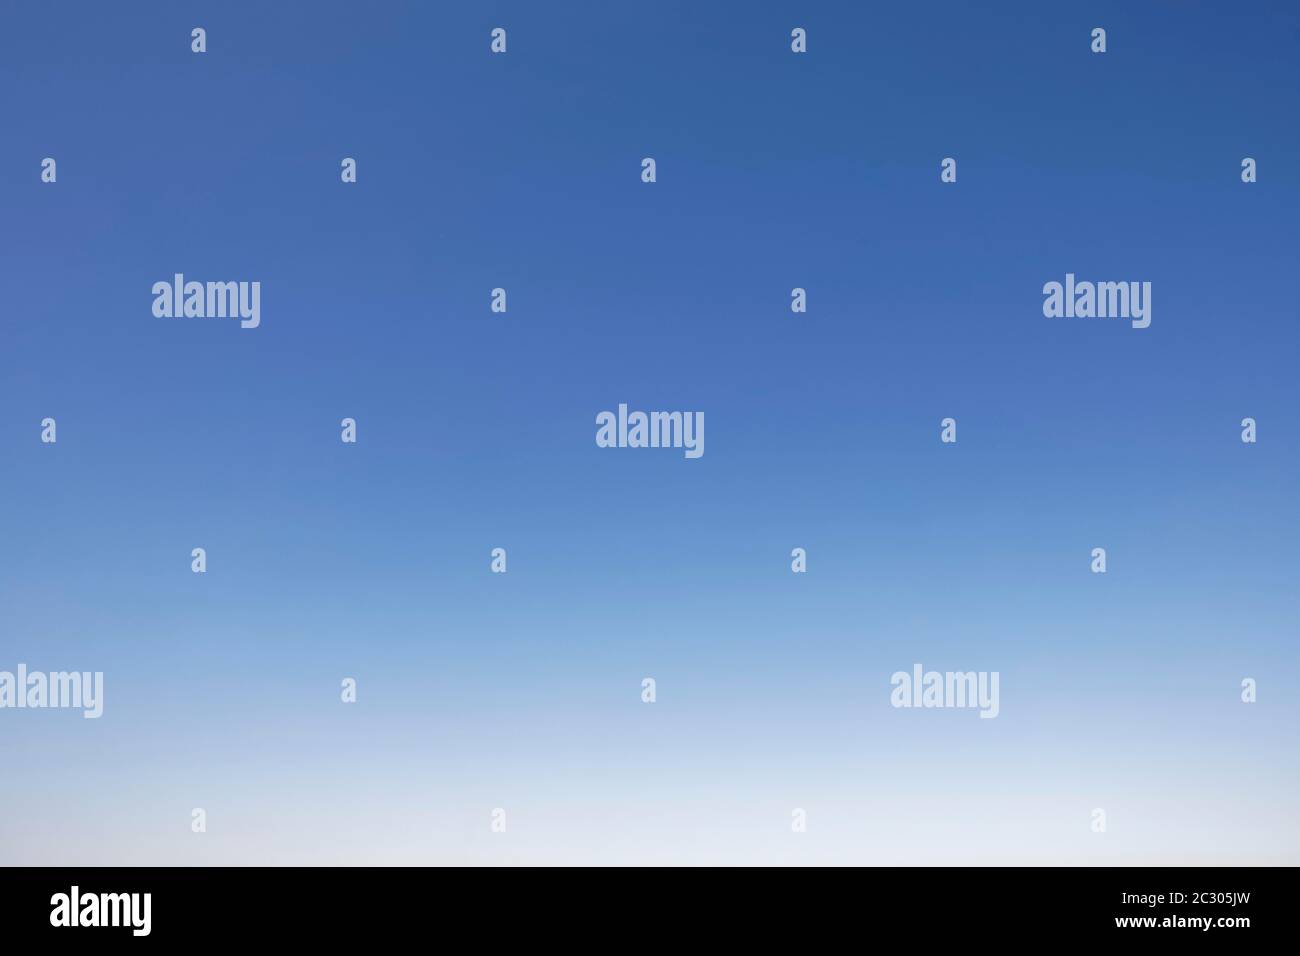 Sendo immagini e fotografie stock ad alta risoluzione - Alamy